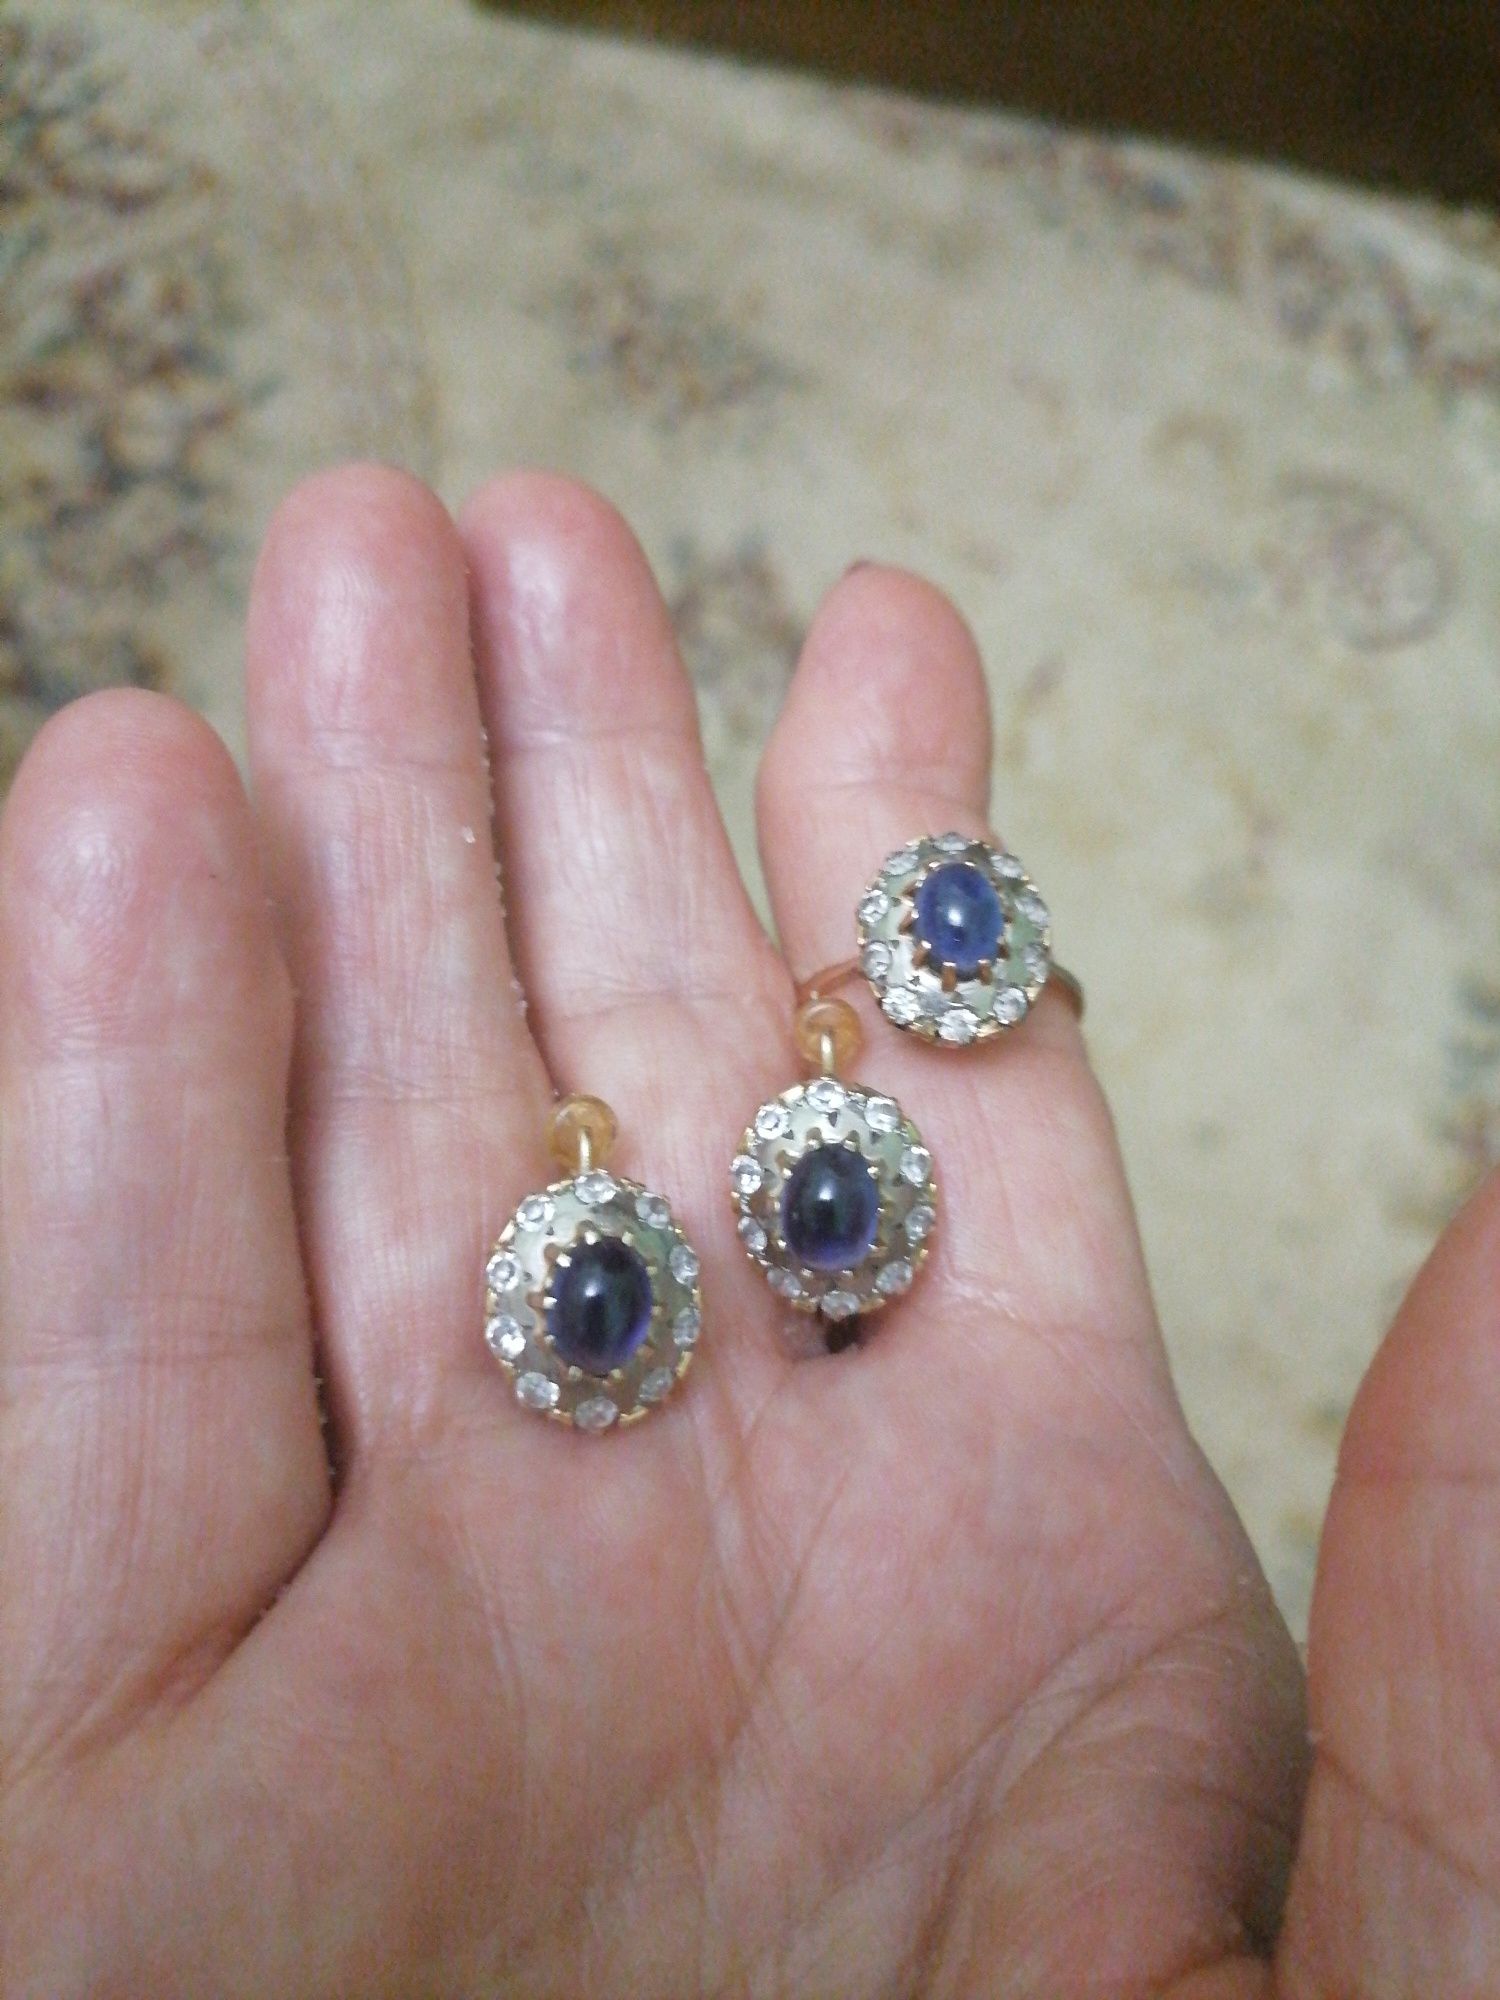 Сережки  и кольцо, набор  Ереван кого завода, модель кубашен.